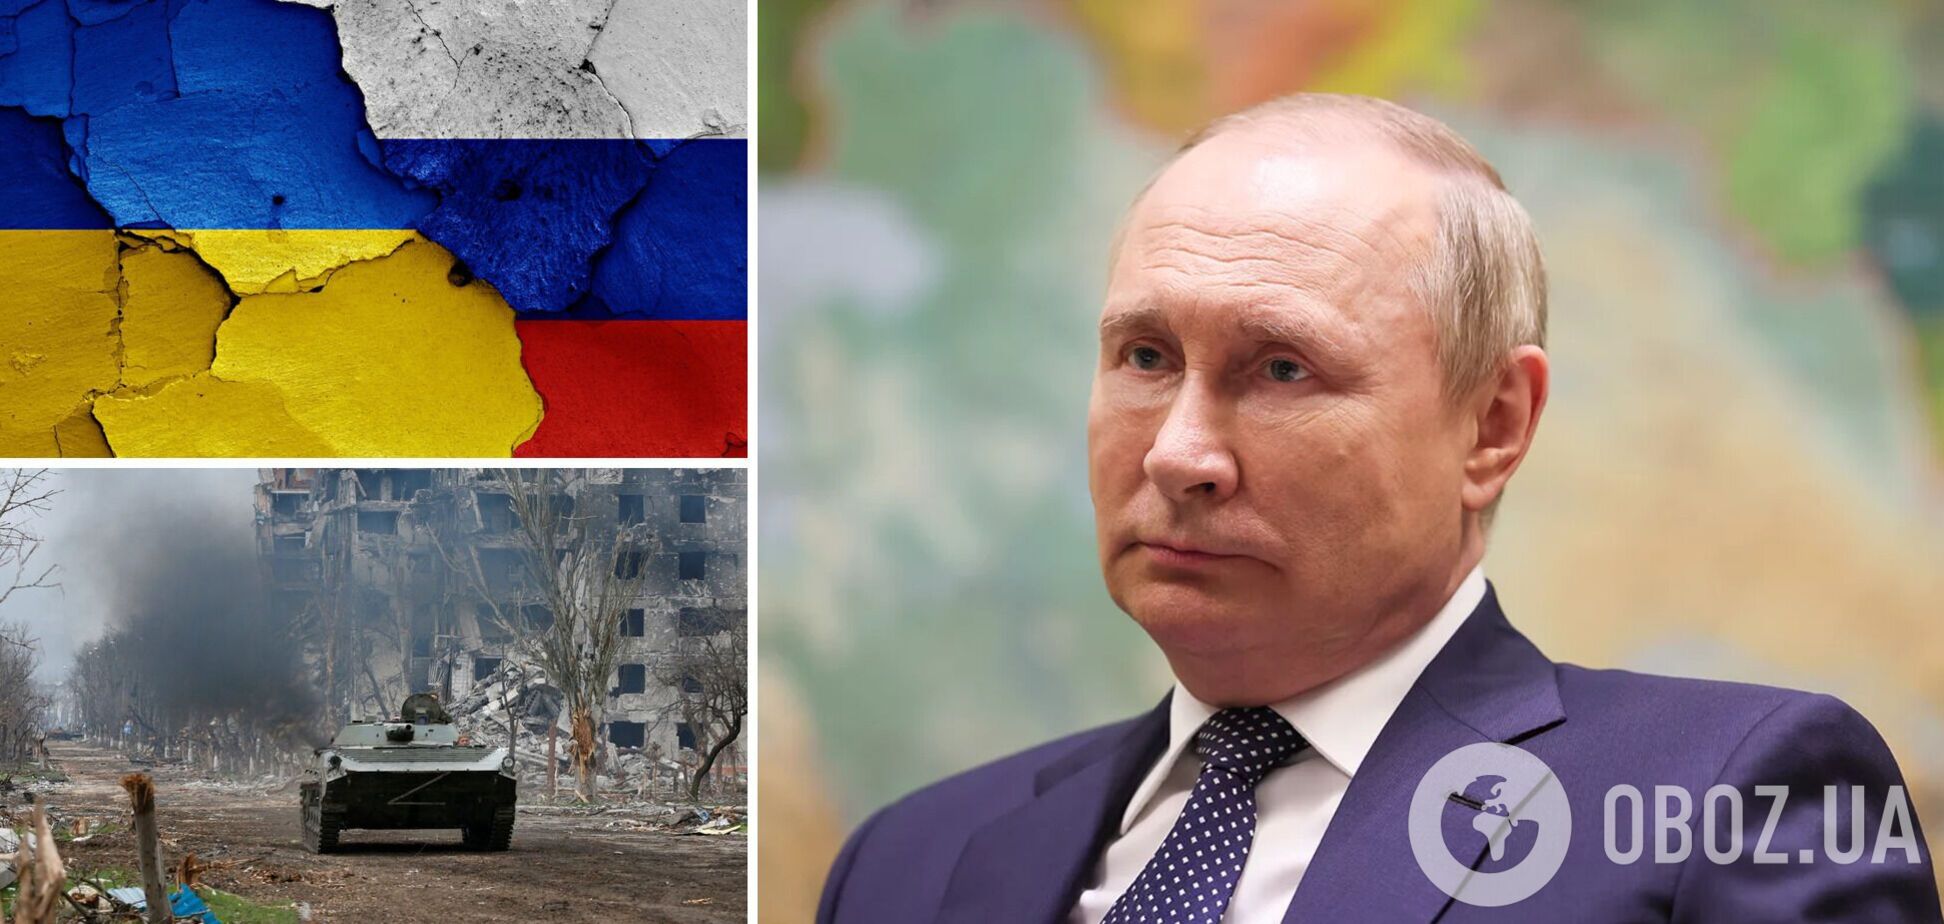 У Кремля осталось мало времени. Изменил ли Путин цели в войне против Украины?